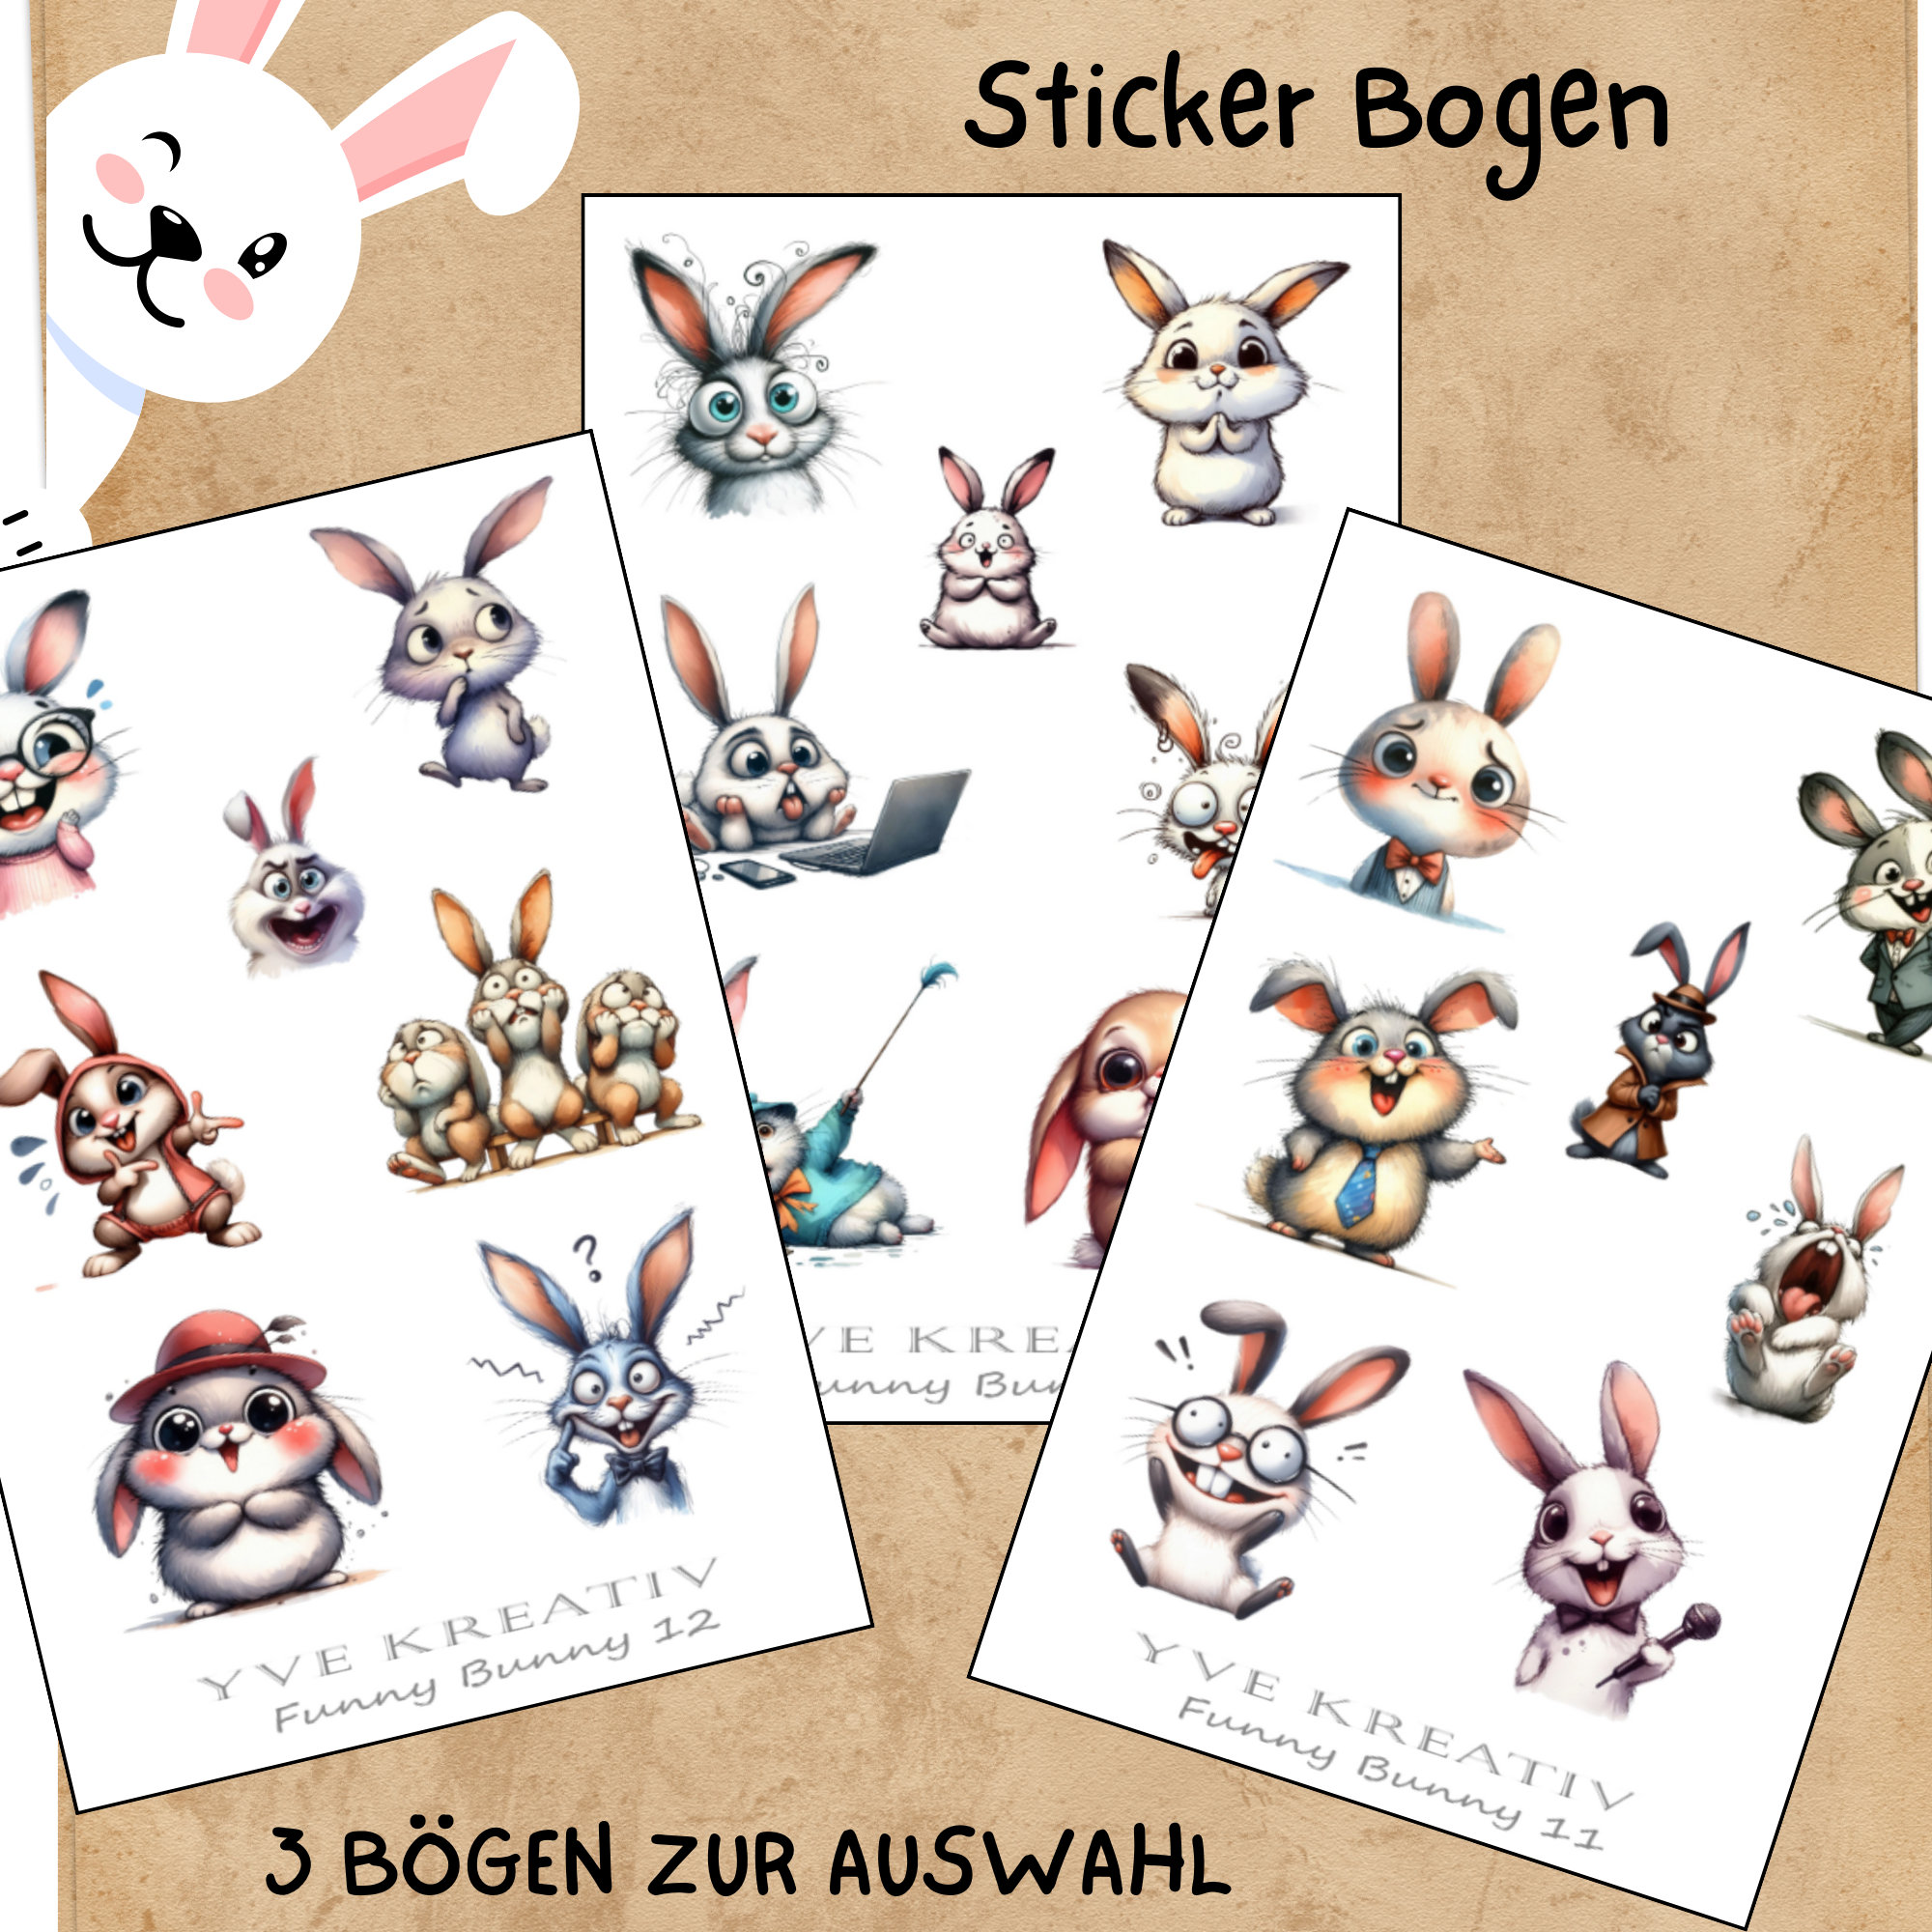 Sticker Bogen - "Funny Bunny" Lustige Häschen | Sticker Set - Journal Sticker - Aufkleber 3 Bögen zur Auswahl in Weiß oder Transparent